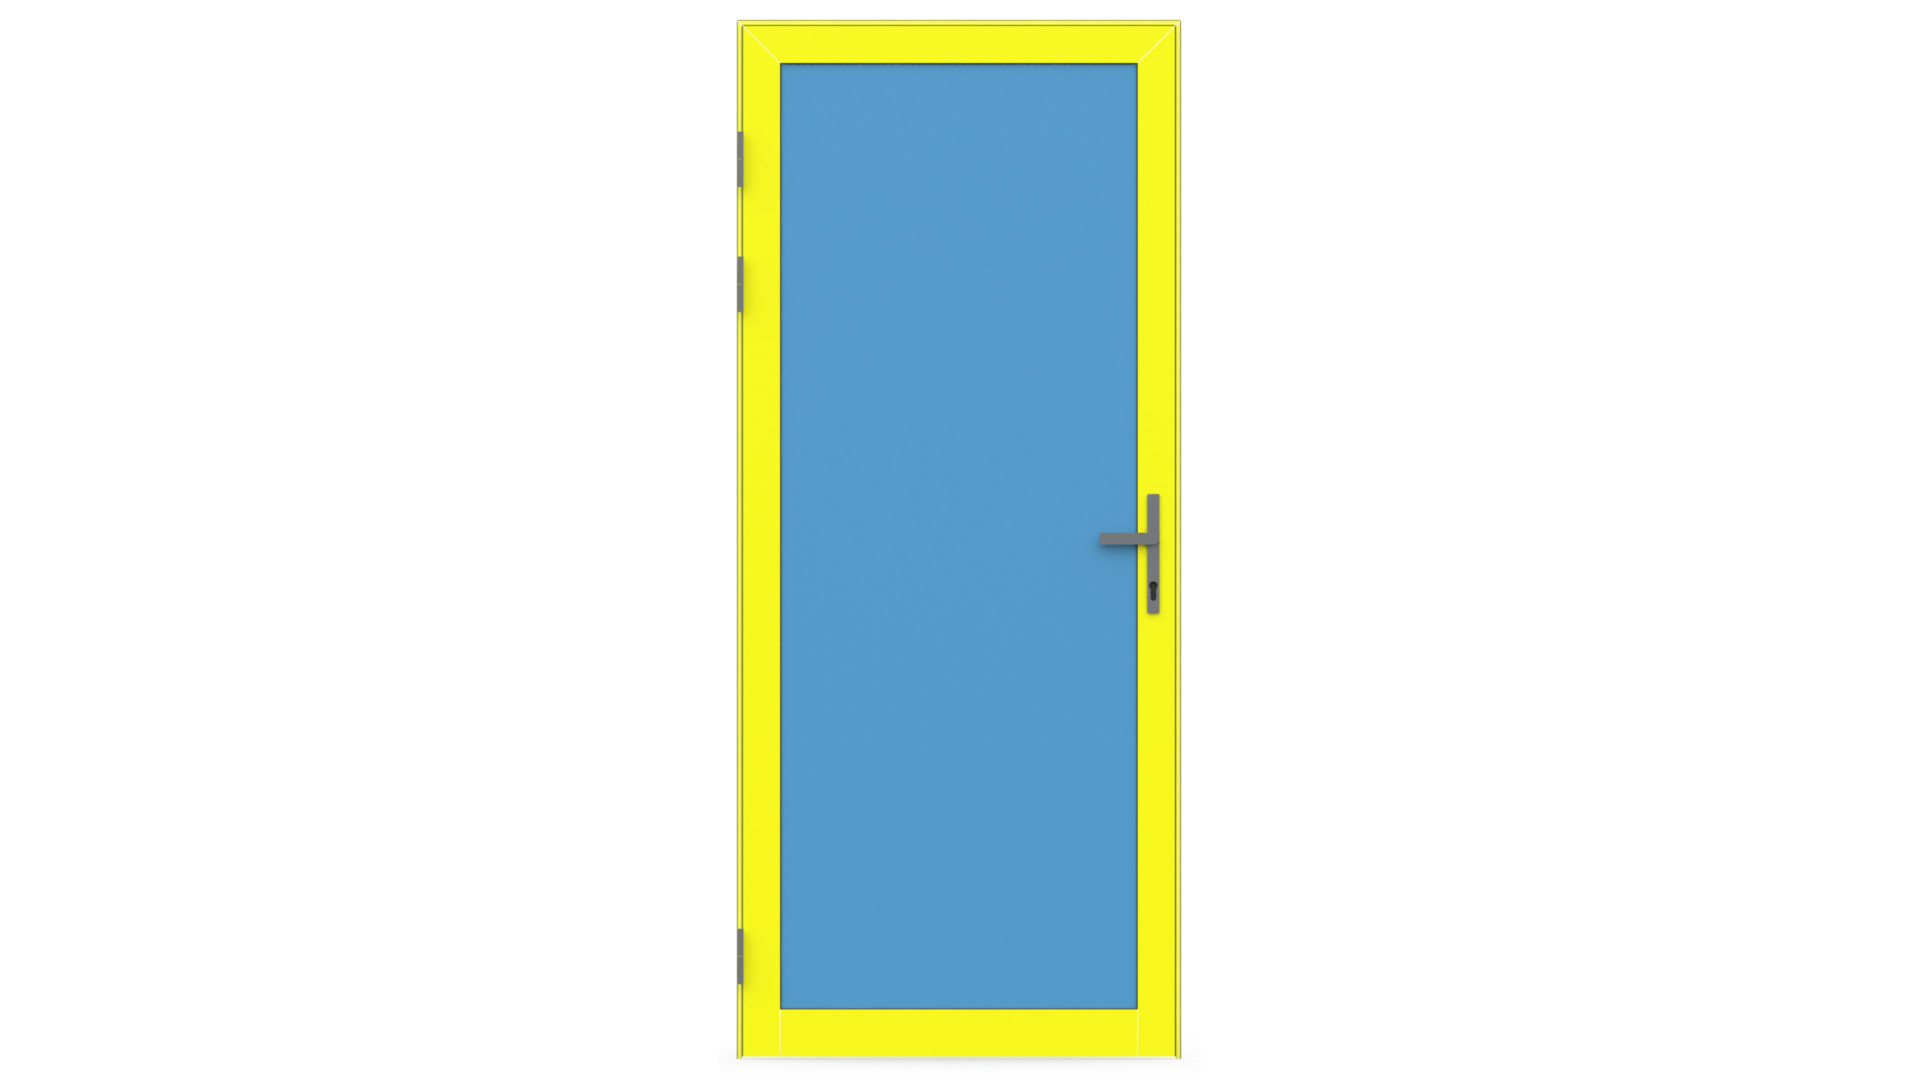 Дверь внутренняя интерьерная ALT 110.13.21